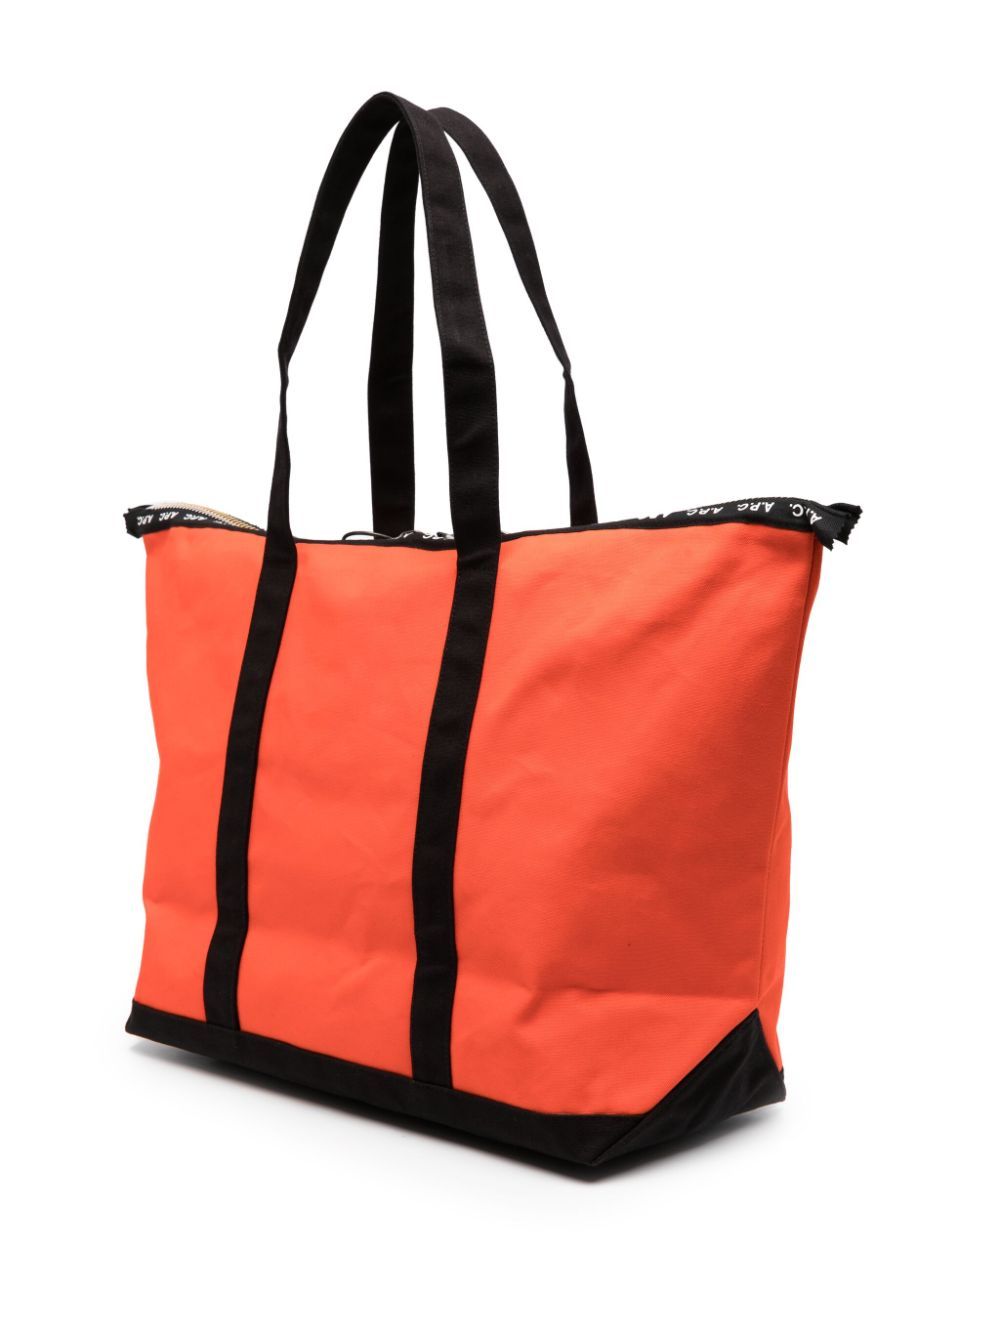 Túi xách JW Anderson x APC với họa tiết logo màu cam dành cho nam